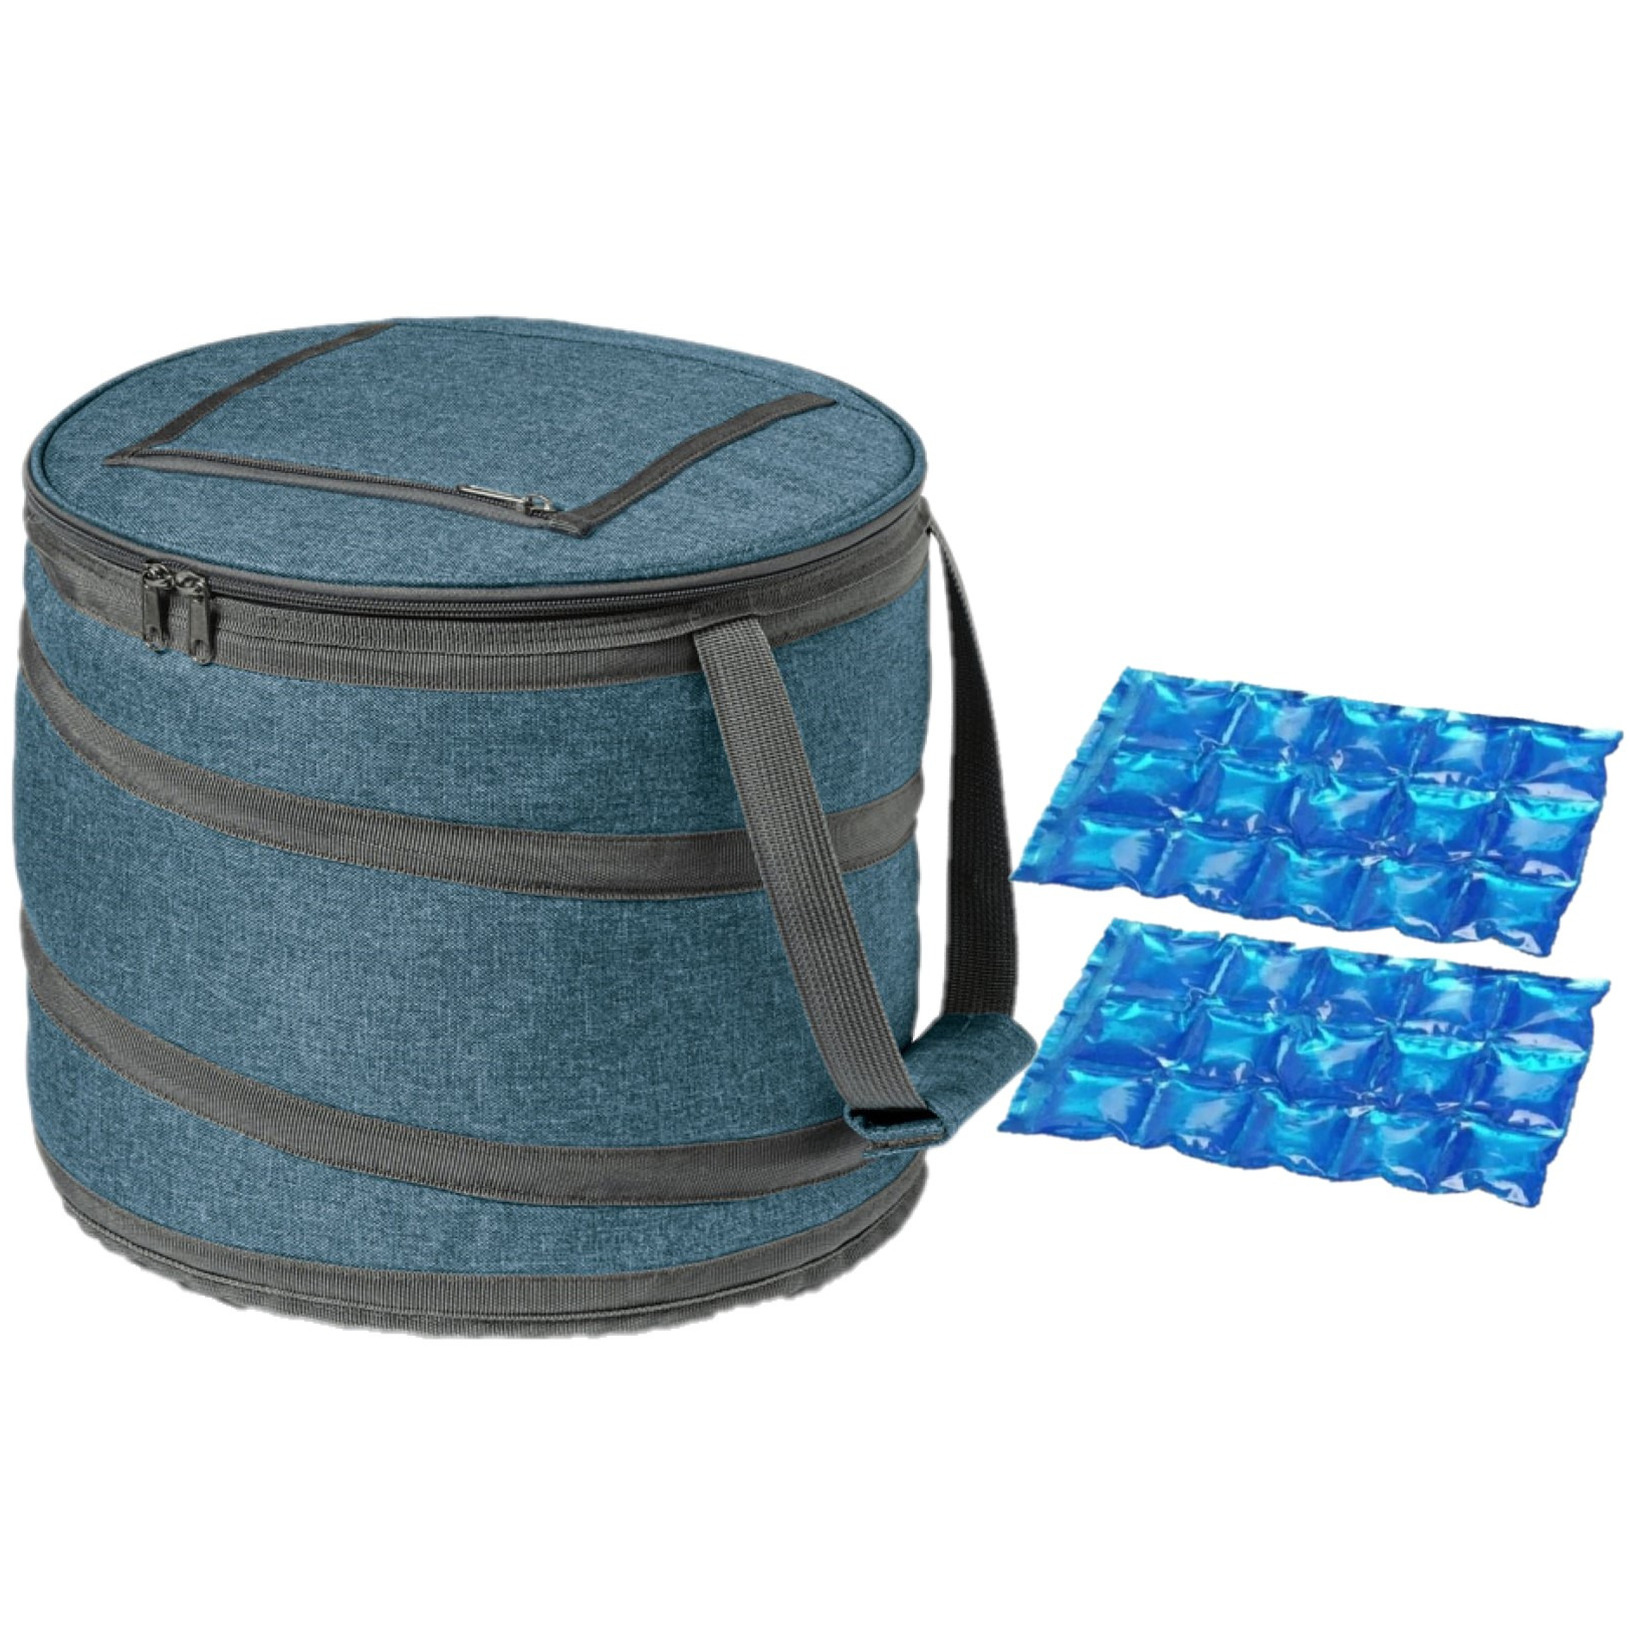 Opvouwbare koeltas blauw-grijs met 2 stuks flexibele koelelementen 15 liter